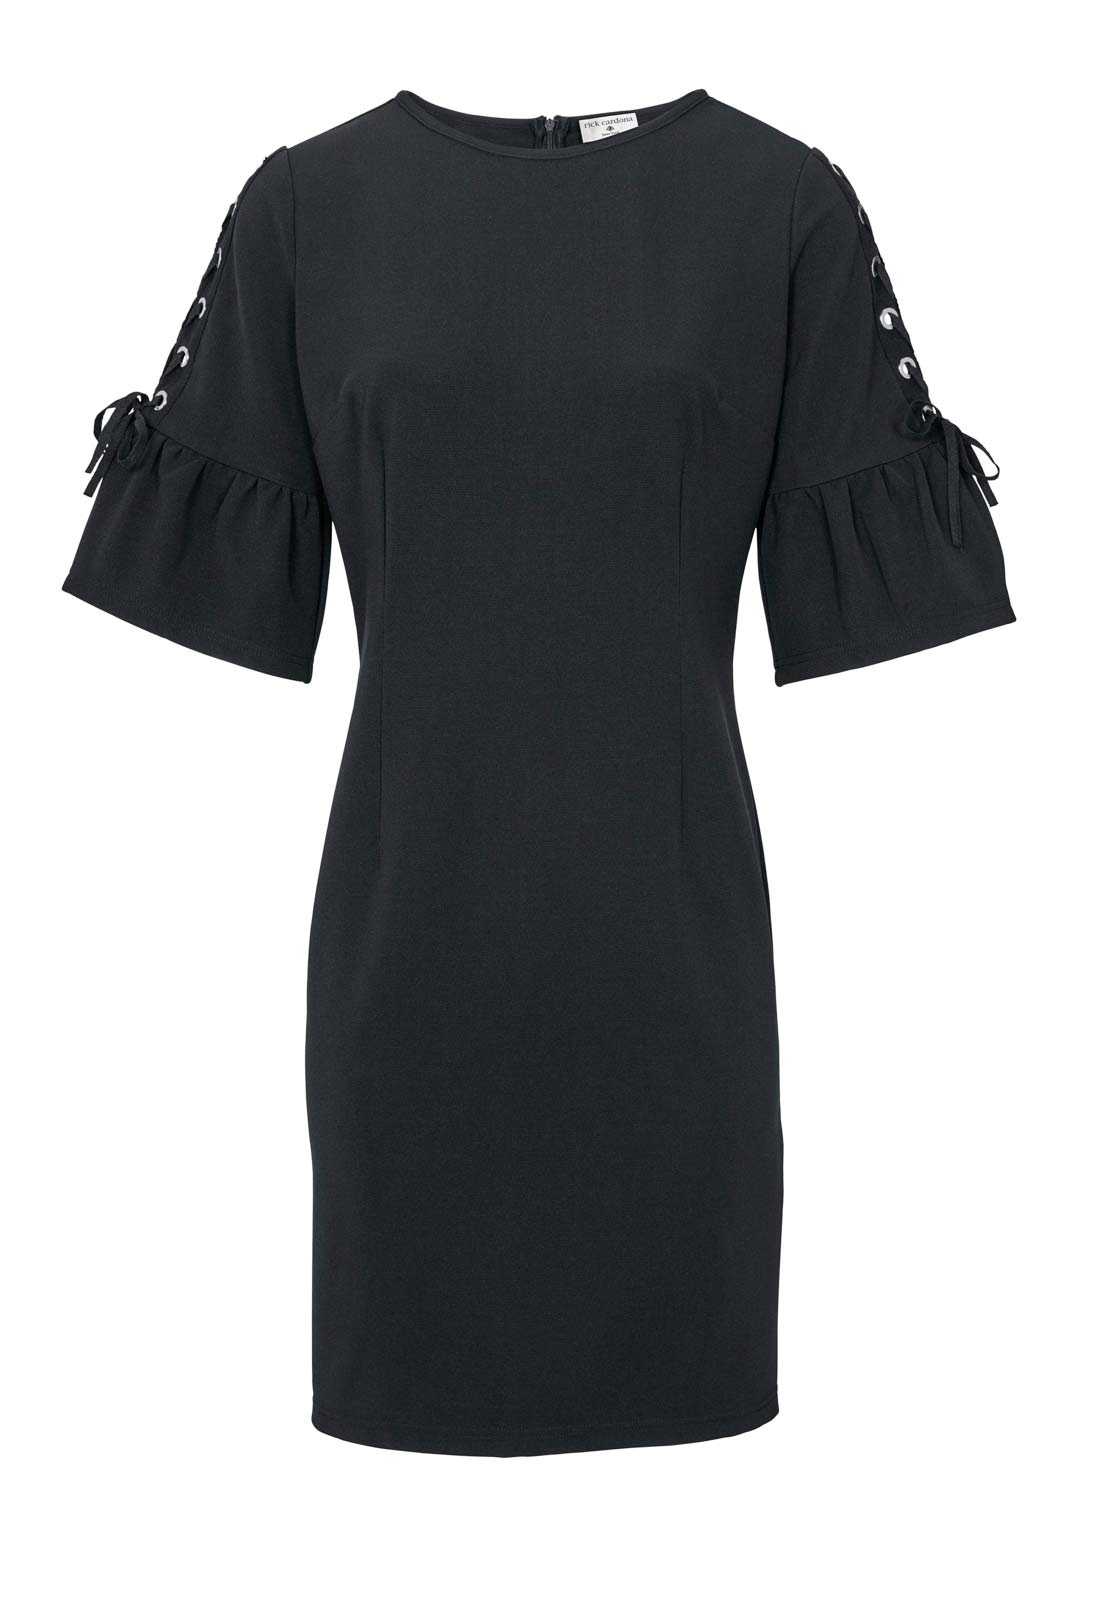 Ashley Brooke Damen Designer-Kleid mit Schnürung, schwarz